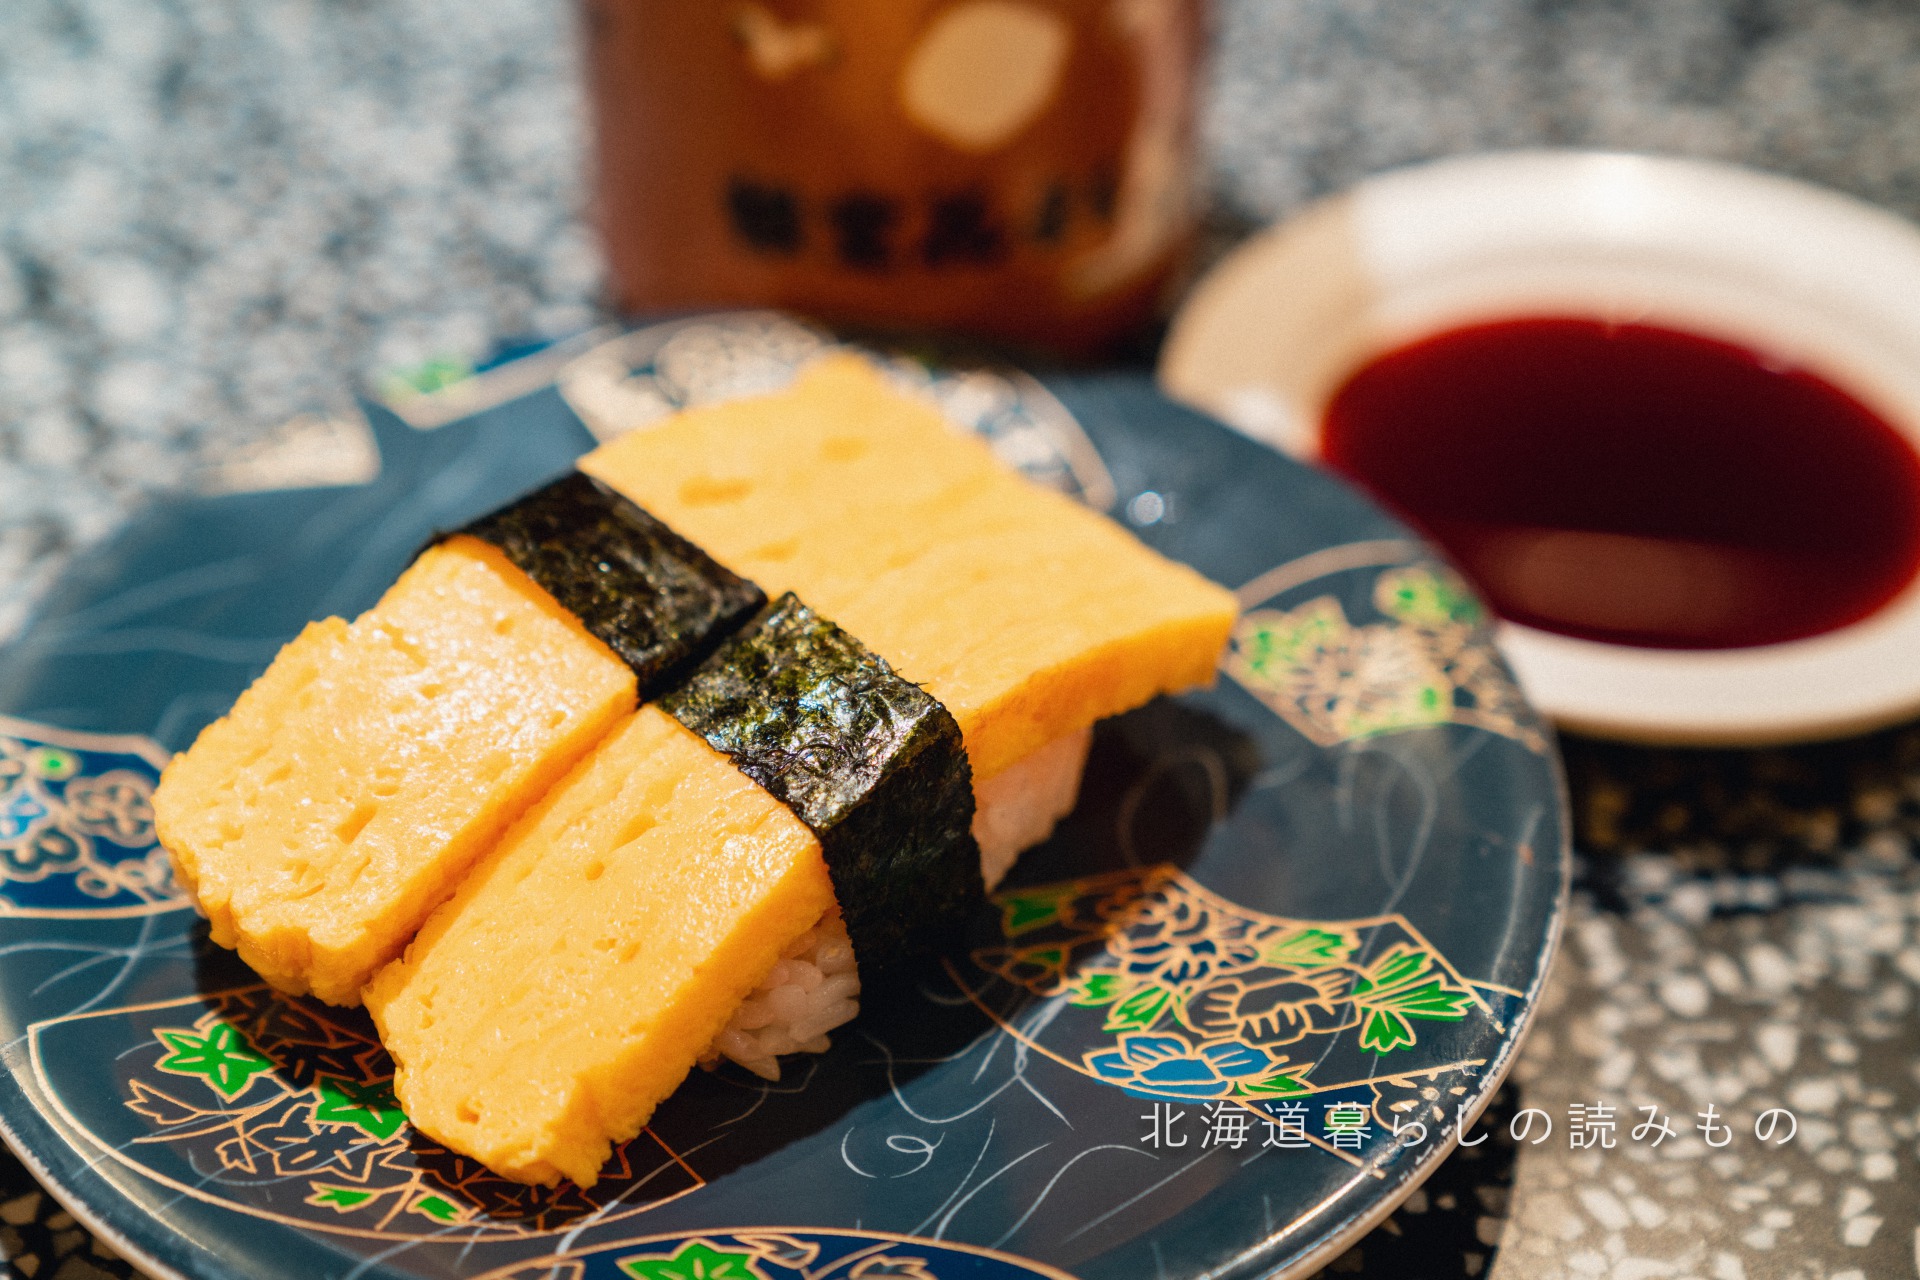 迴轉壽司根室花丸的菜單上的「Omelet Sushi」